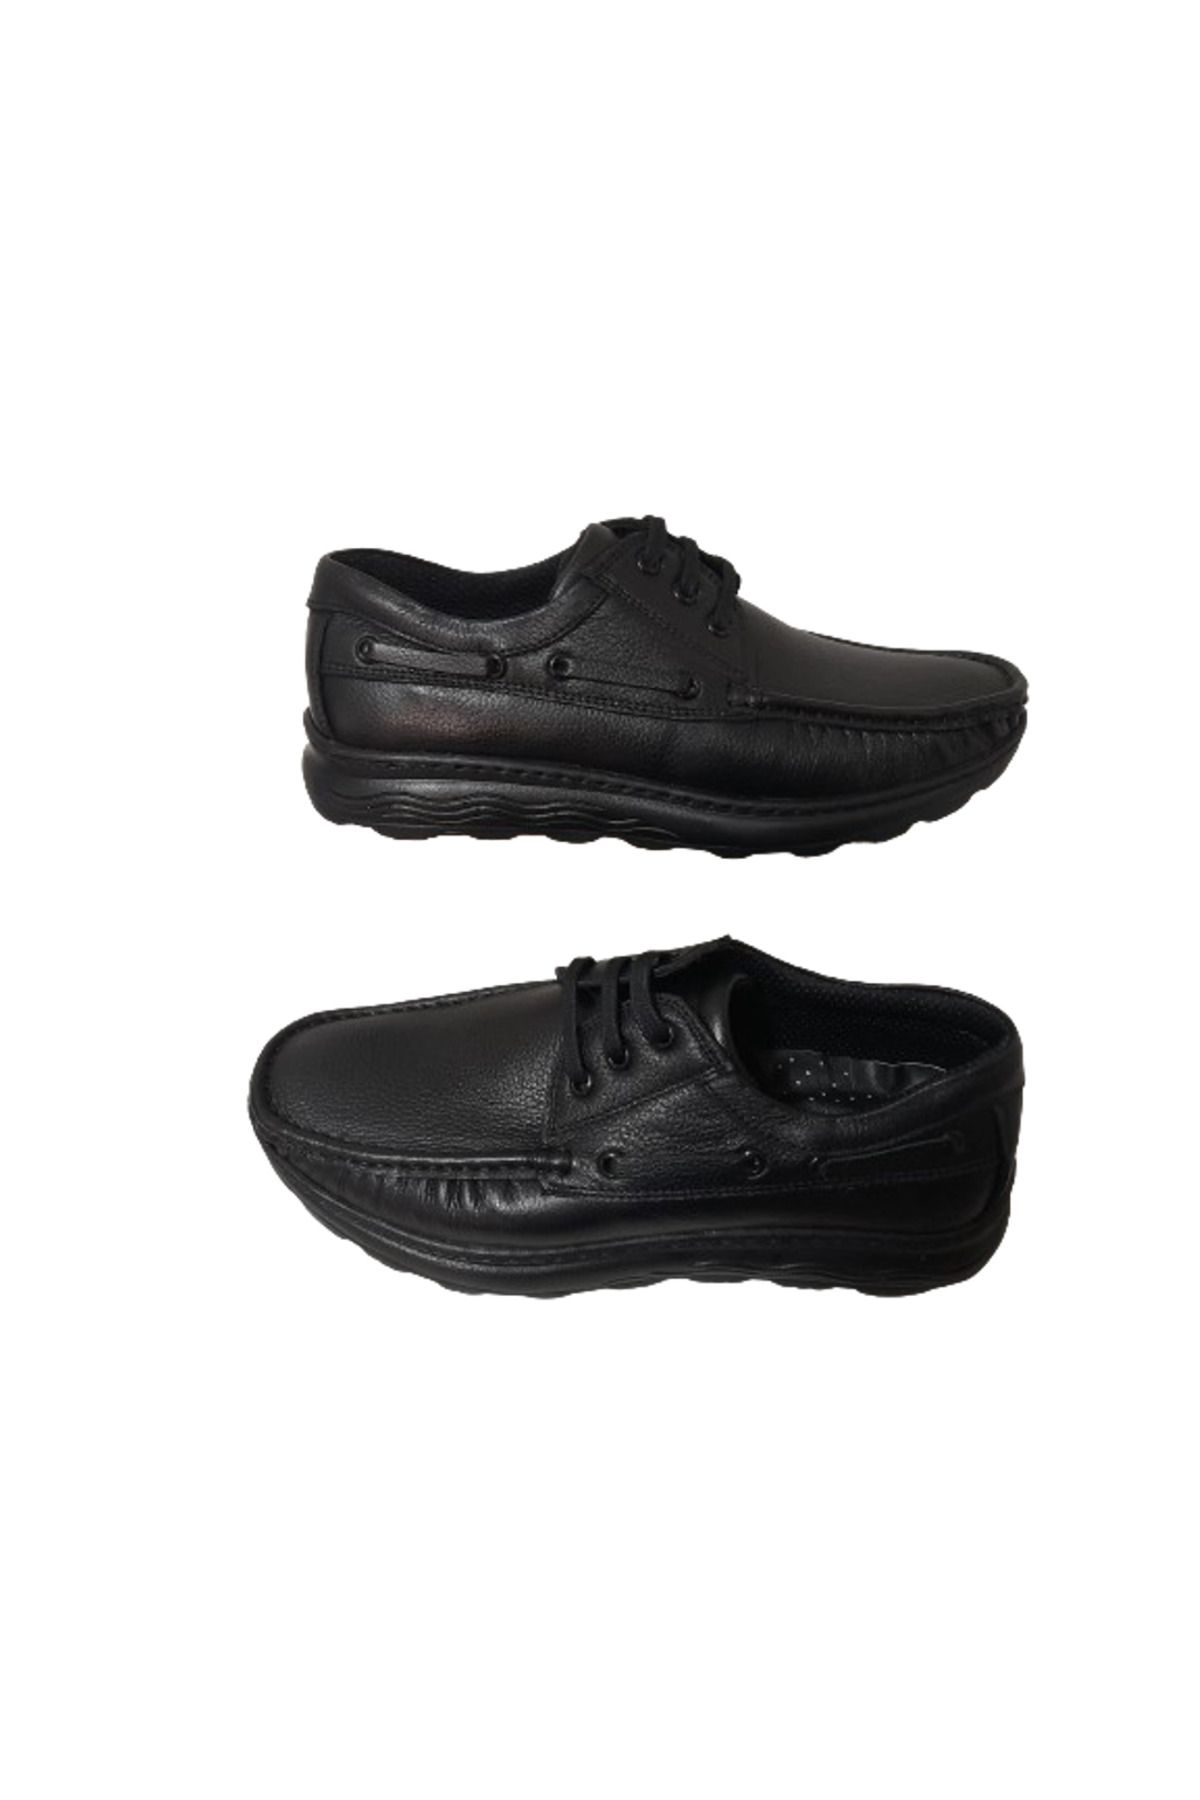 Modesa Erkek Siyah Deri Bağcıklı Ortopedik  Model Günlük Klasik Şık Ayakkabı